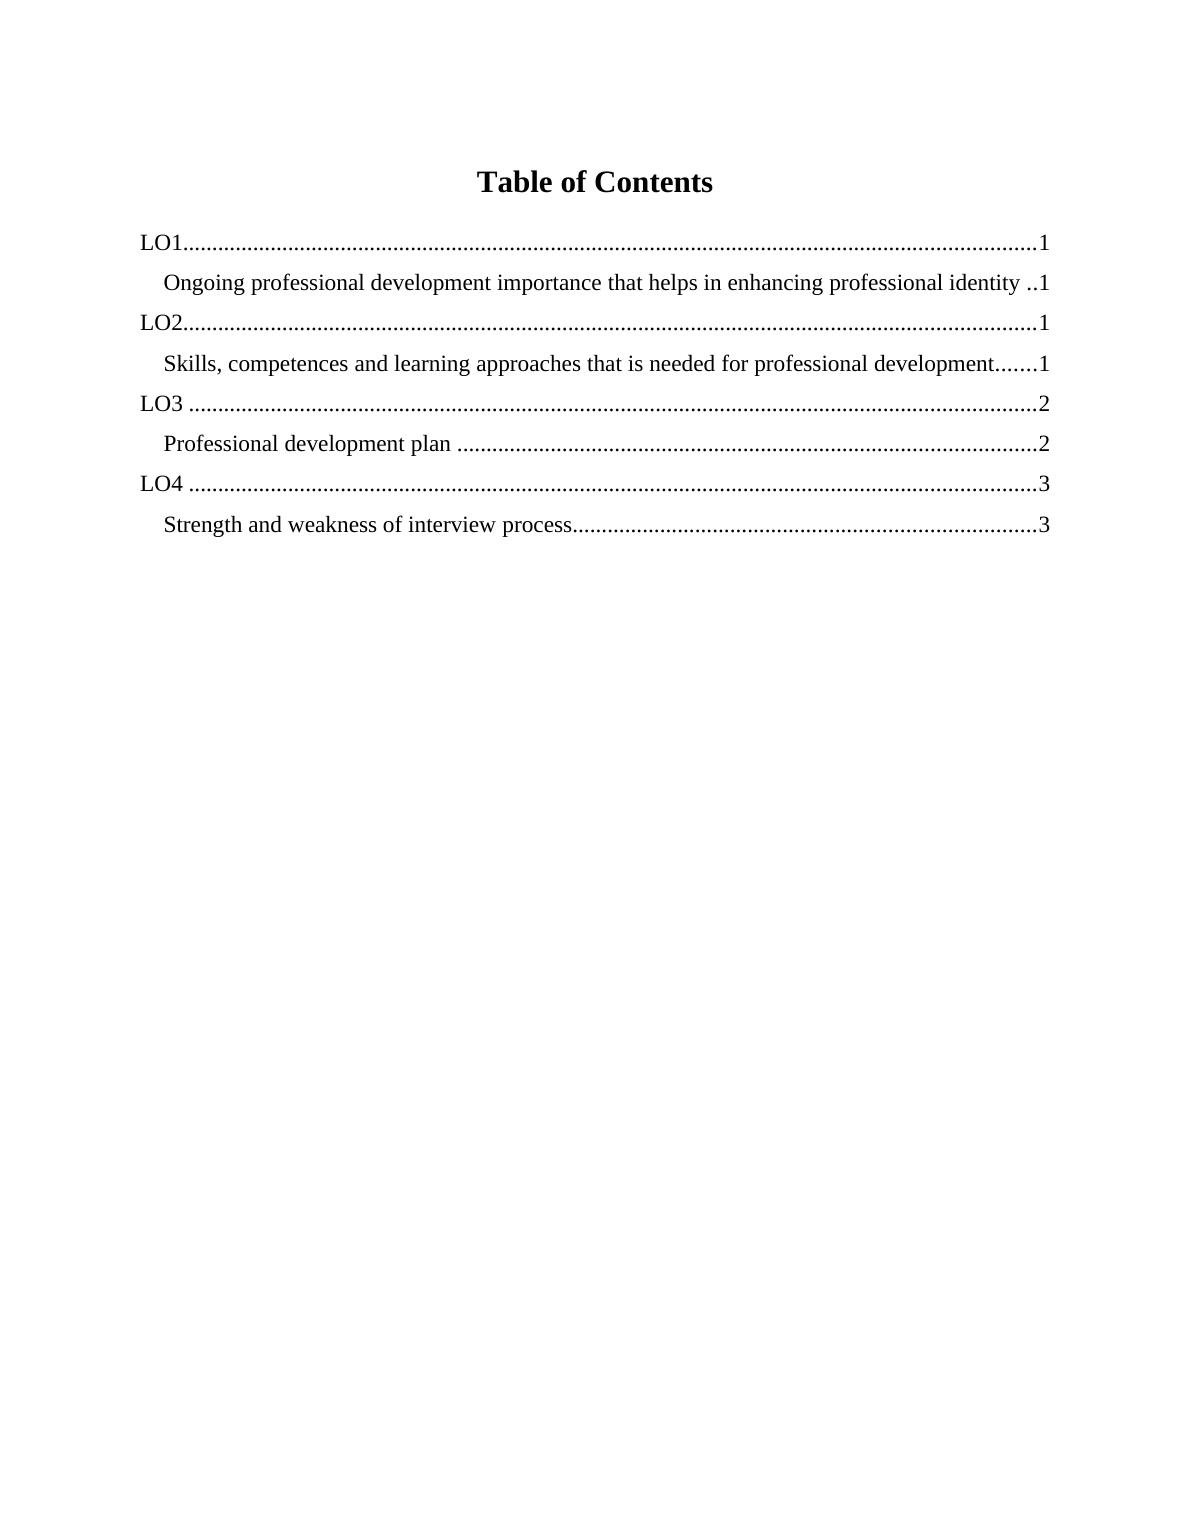 Continuous Professional Development - Doc_2